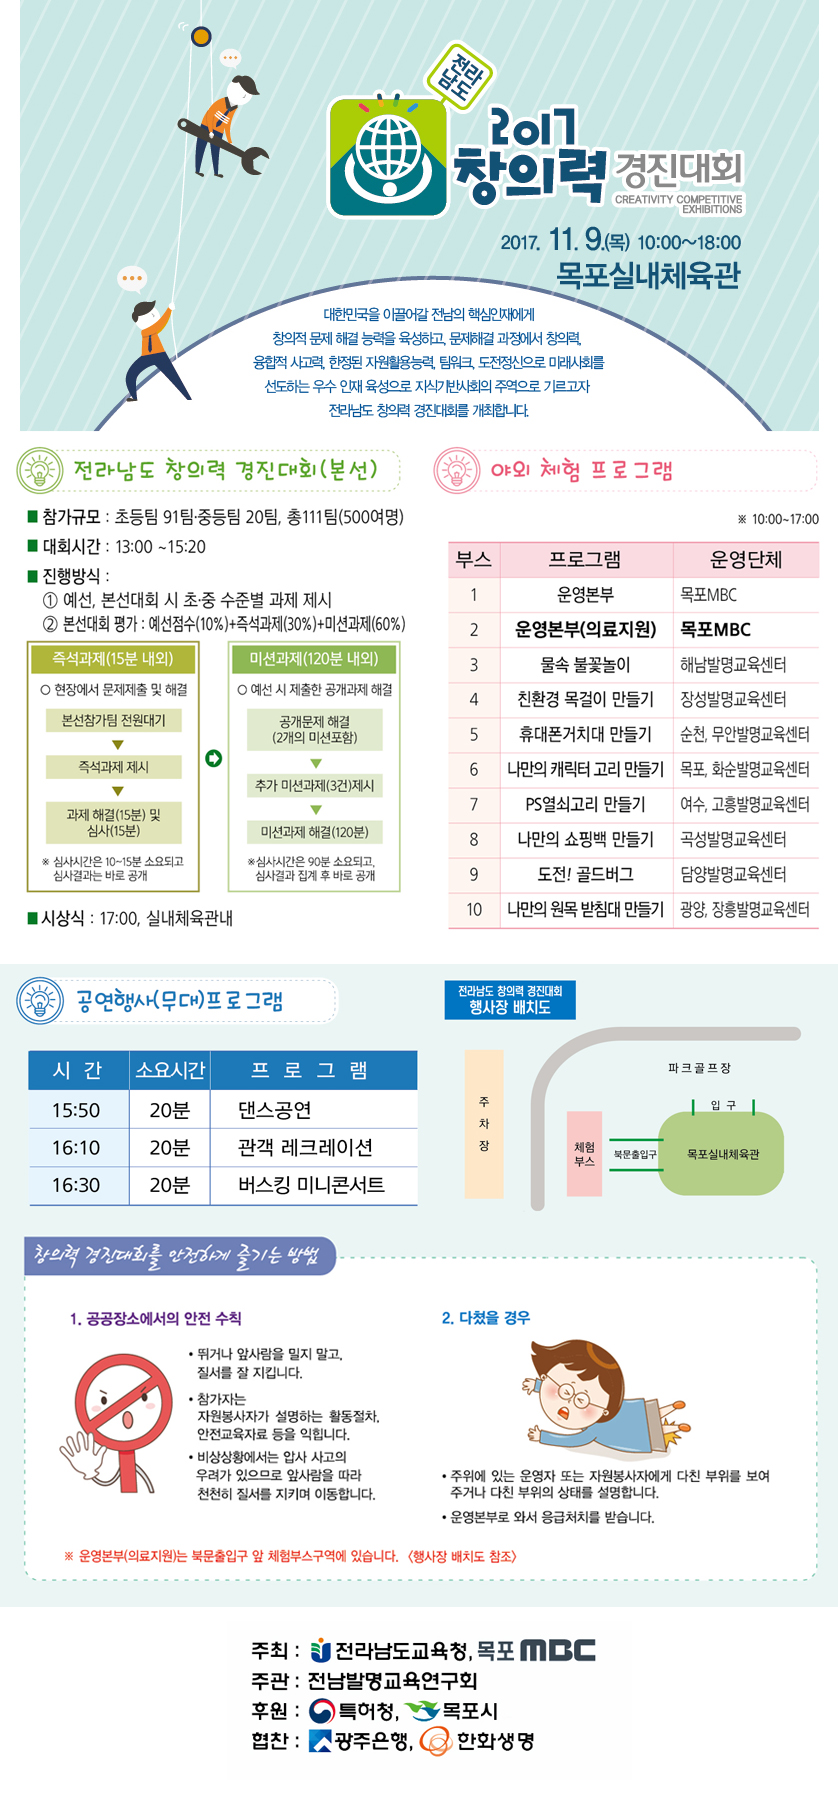 전라남도 2017 창의력 경진대회 행사정보